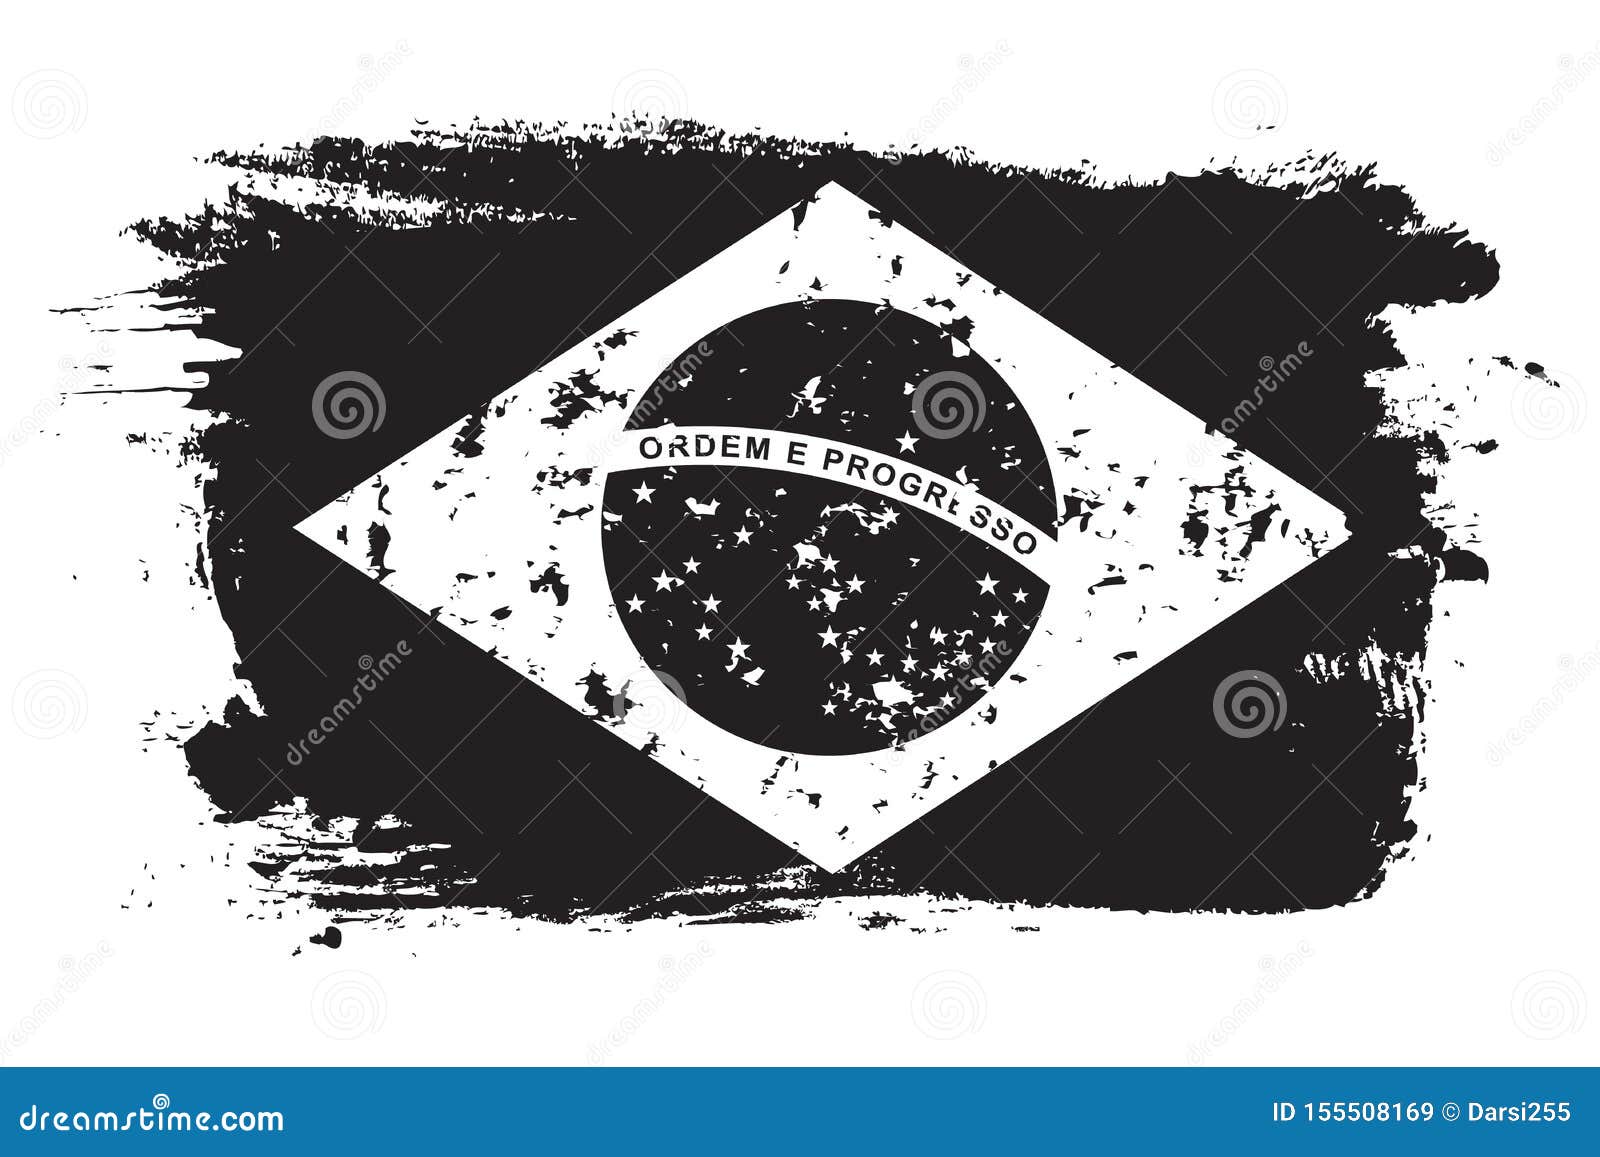 brazil grunge flag, black  on white background,  .